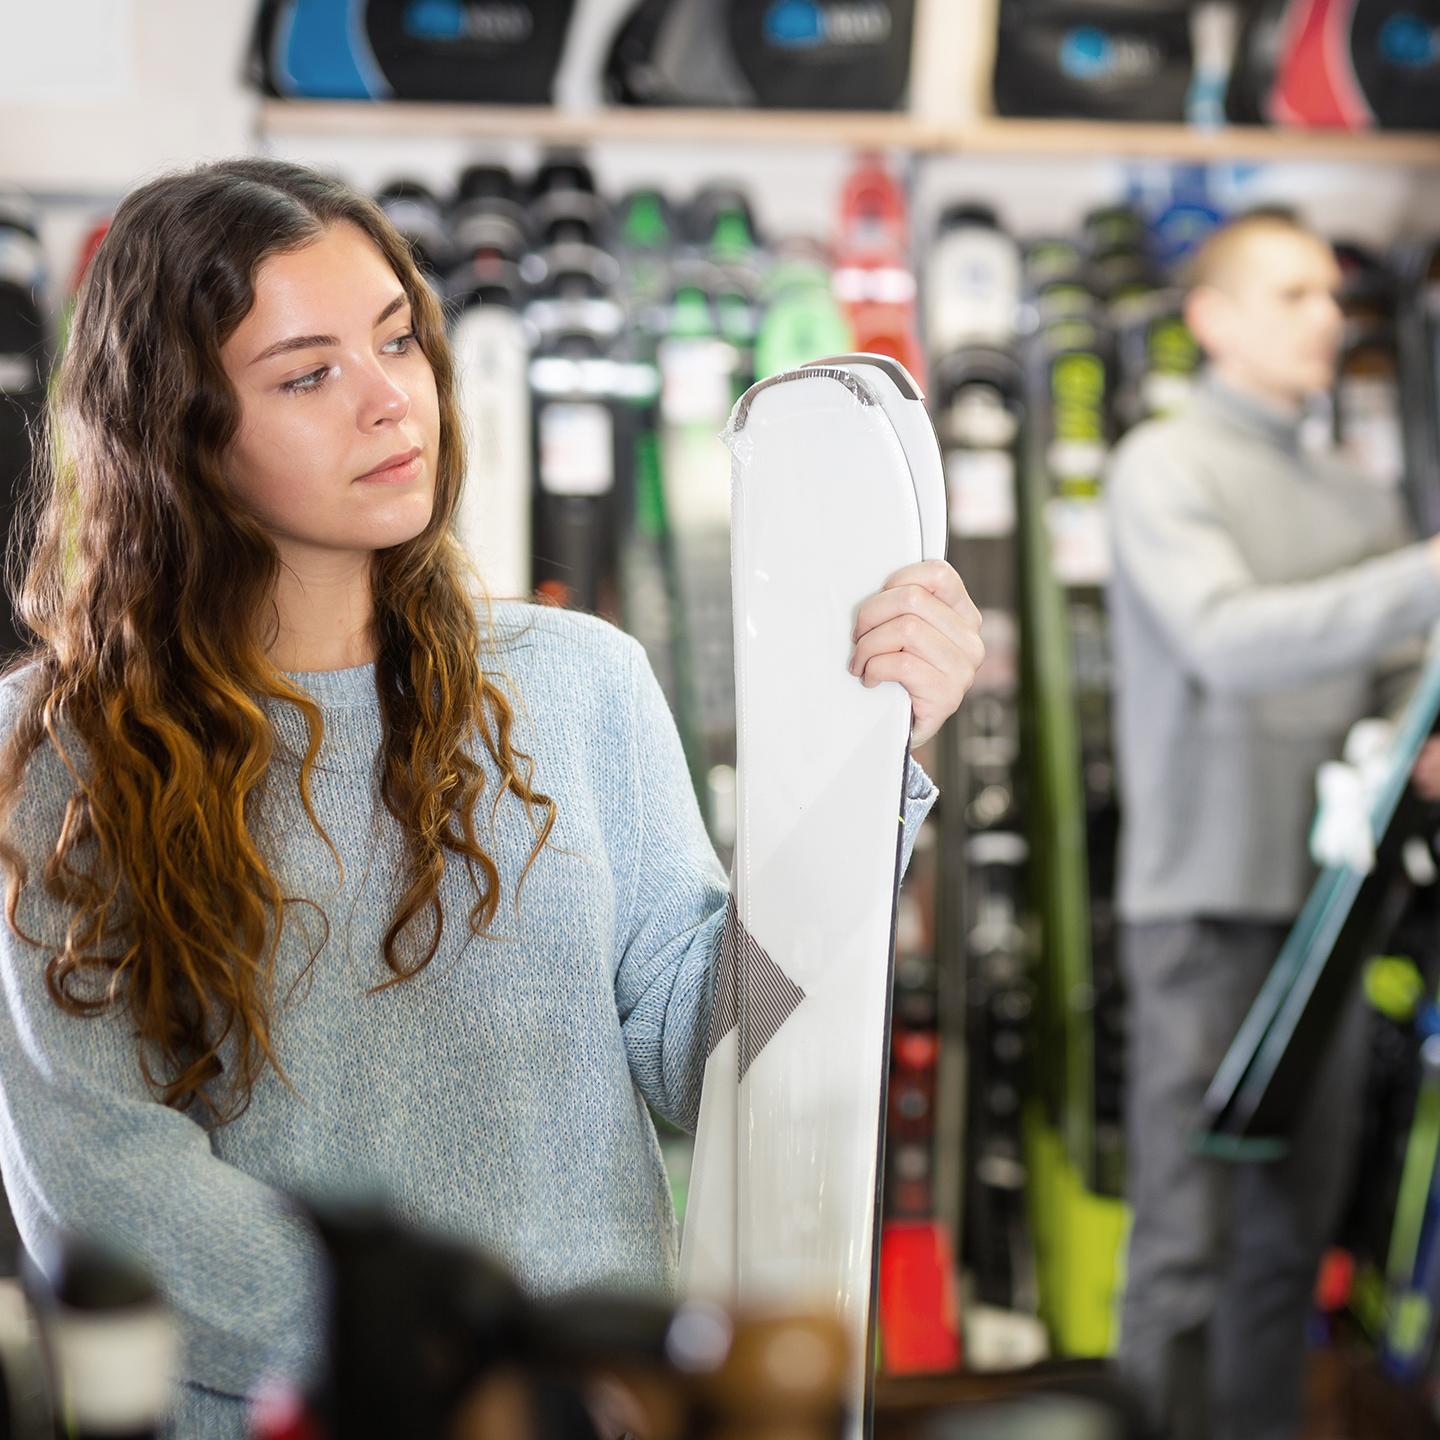 Une jeune femme est en train de choisir des skis dans un magasin de sport